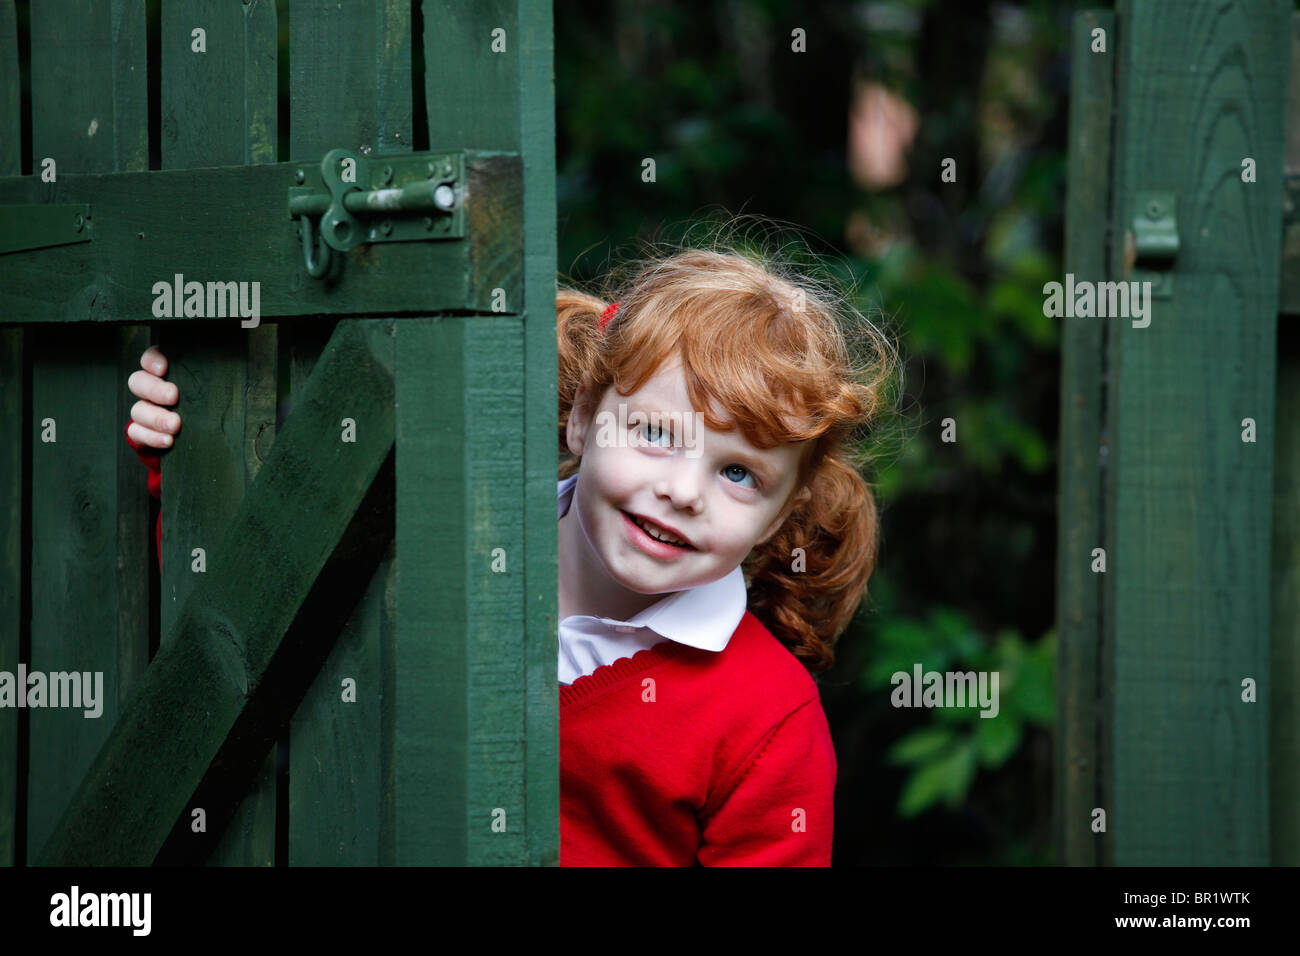 Kleines Mädchen, 4 Jahre, tragen ihre Schuluniform in einem Garten. Stockfoto